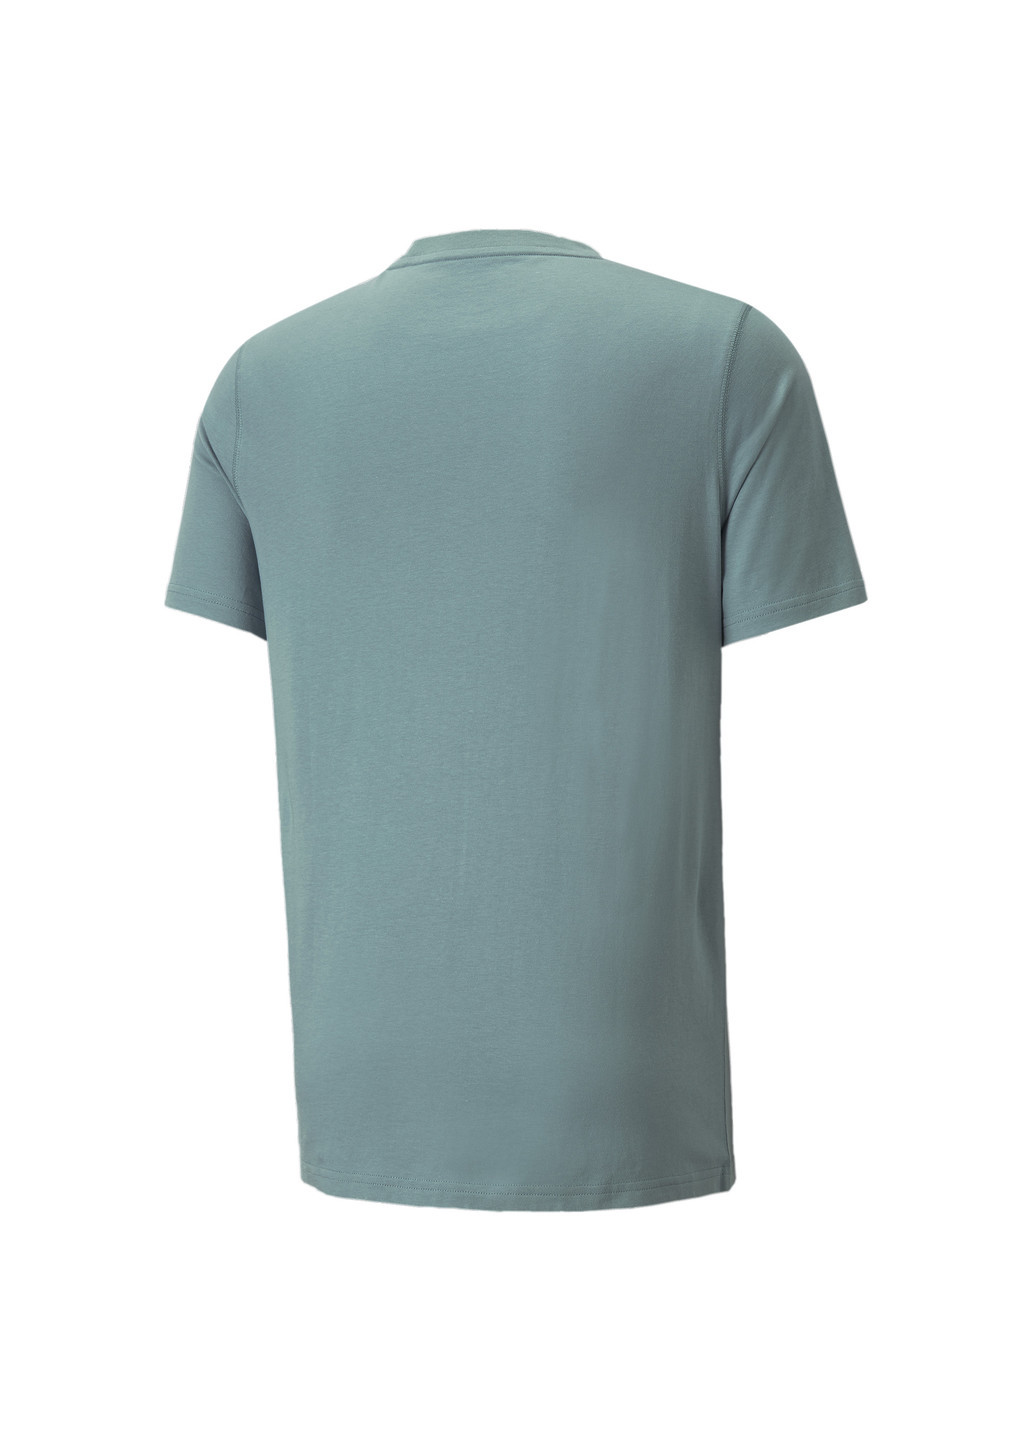 Синяя футболка modern basics men's tee Puma